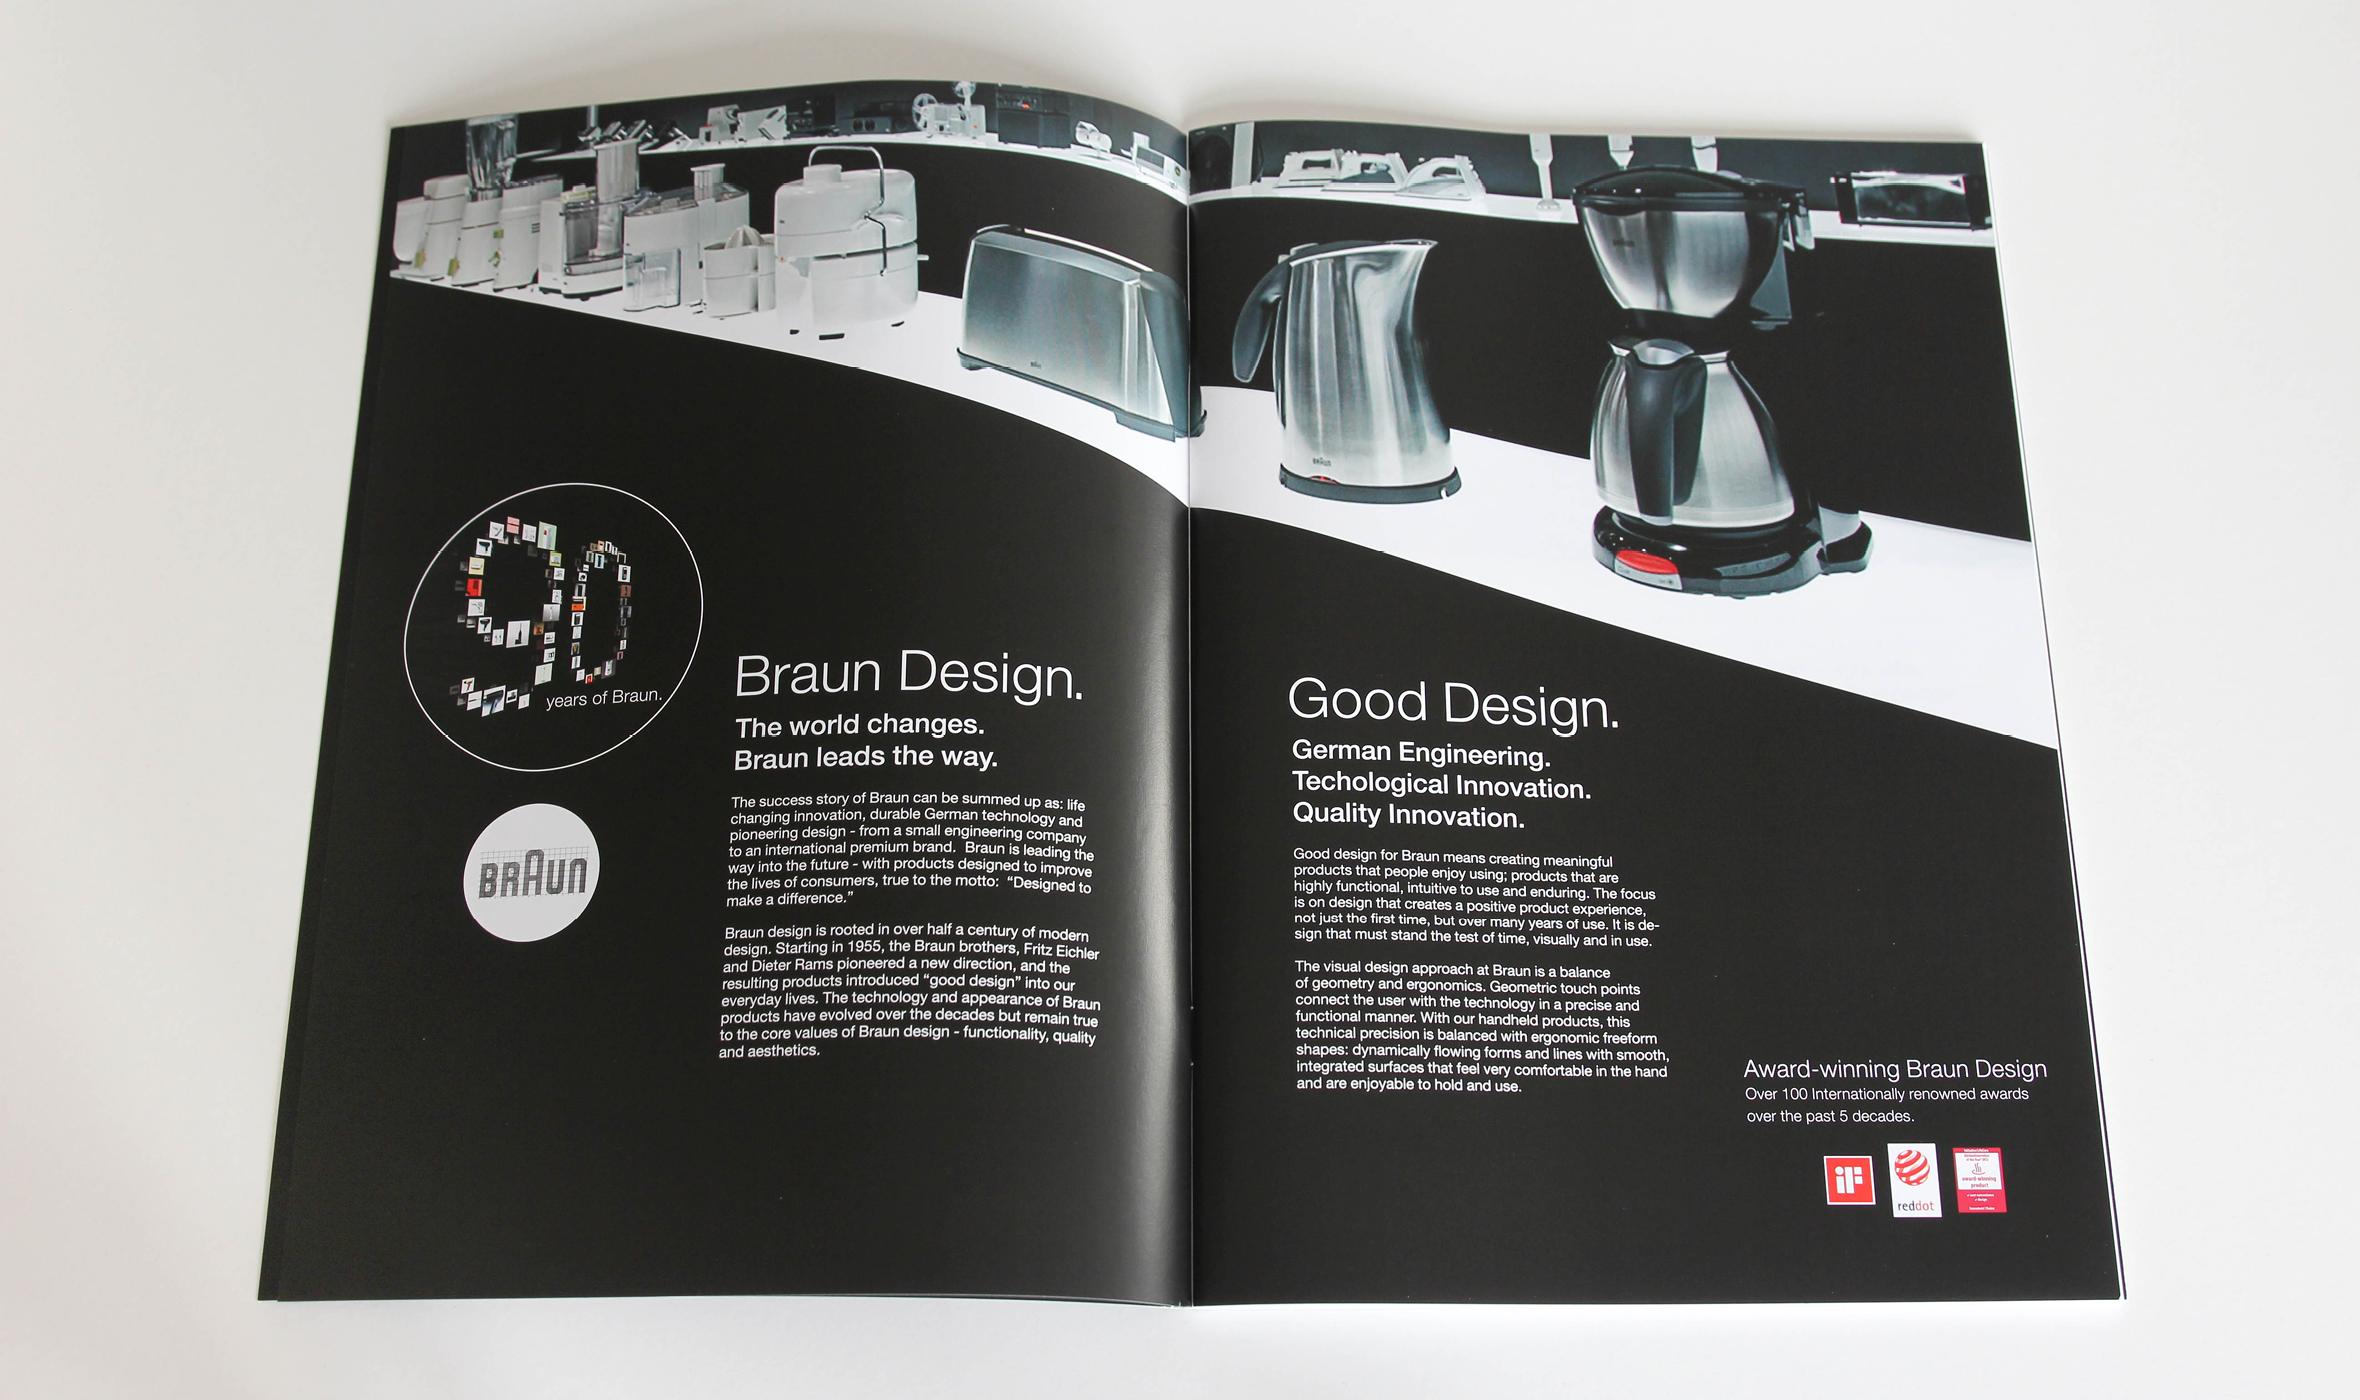 BRAUN Gesamtkatalog, Küchen & Haushaltsprodukte, kitchen & household range, Doppelseite Braun Design